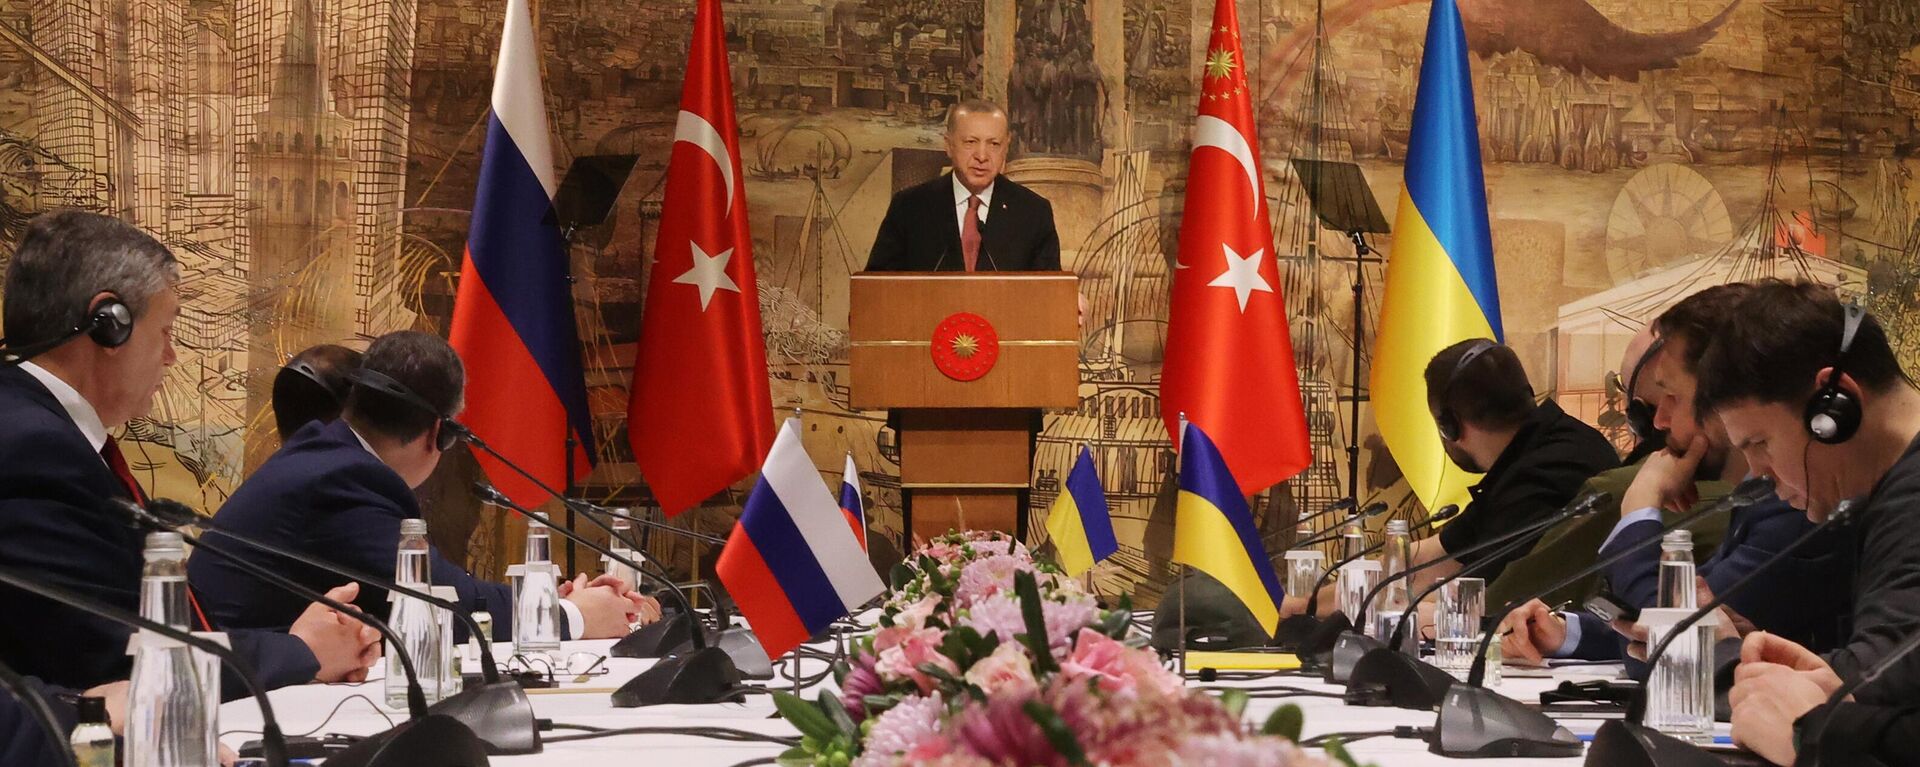 الرئيس التركي رجب طيب أردوغان يلقي كلمة قبل بدء المفاوضات الروسية الأوكرانية في قصر دولما بهجة في اسطنبول، تركيا 29 مارس 2022 - سبوتنيك عربي, 1920, 19.04.2022